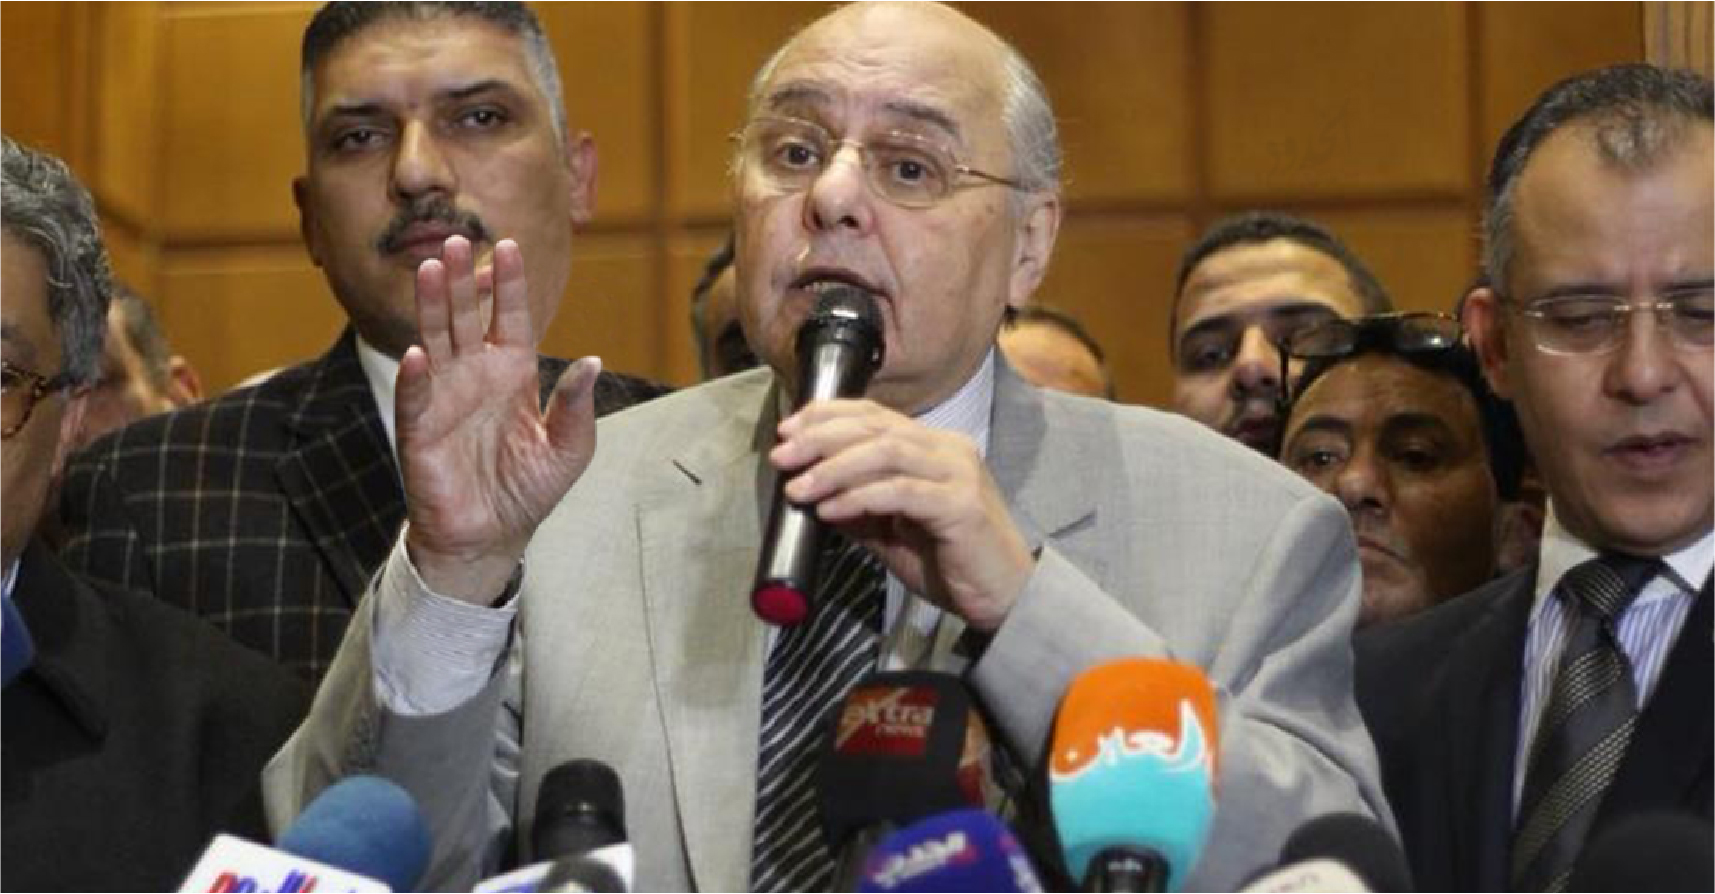 صورة مرشّح رئاسي مصري يتبرّأ من الخونة الذين سيصوّتون له بدل السيسي